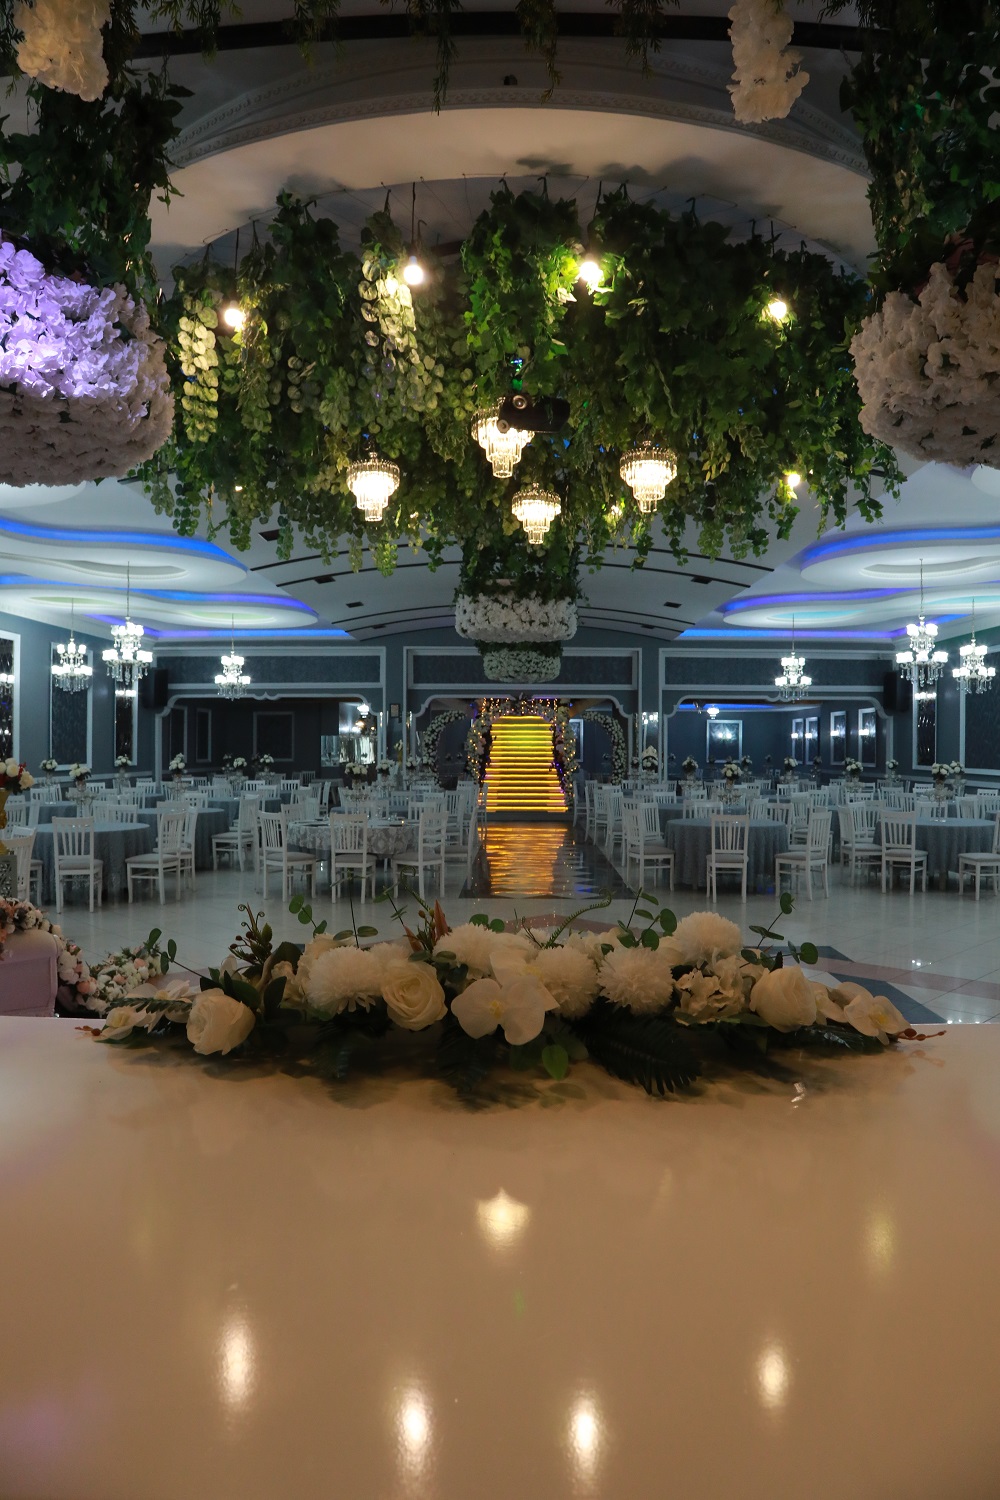 Salon Sırma - Sakarya Düğün Salonu